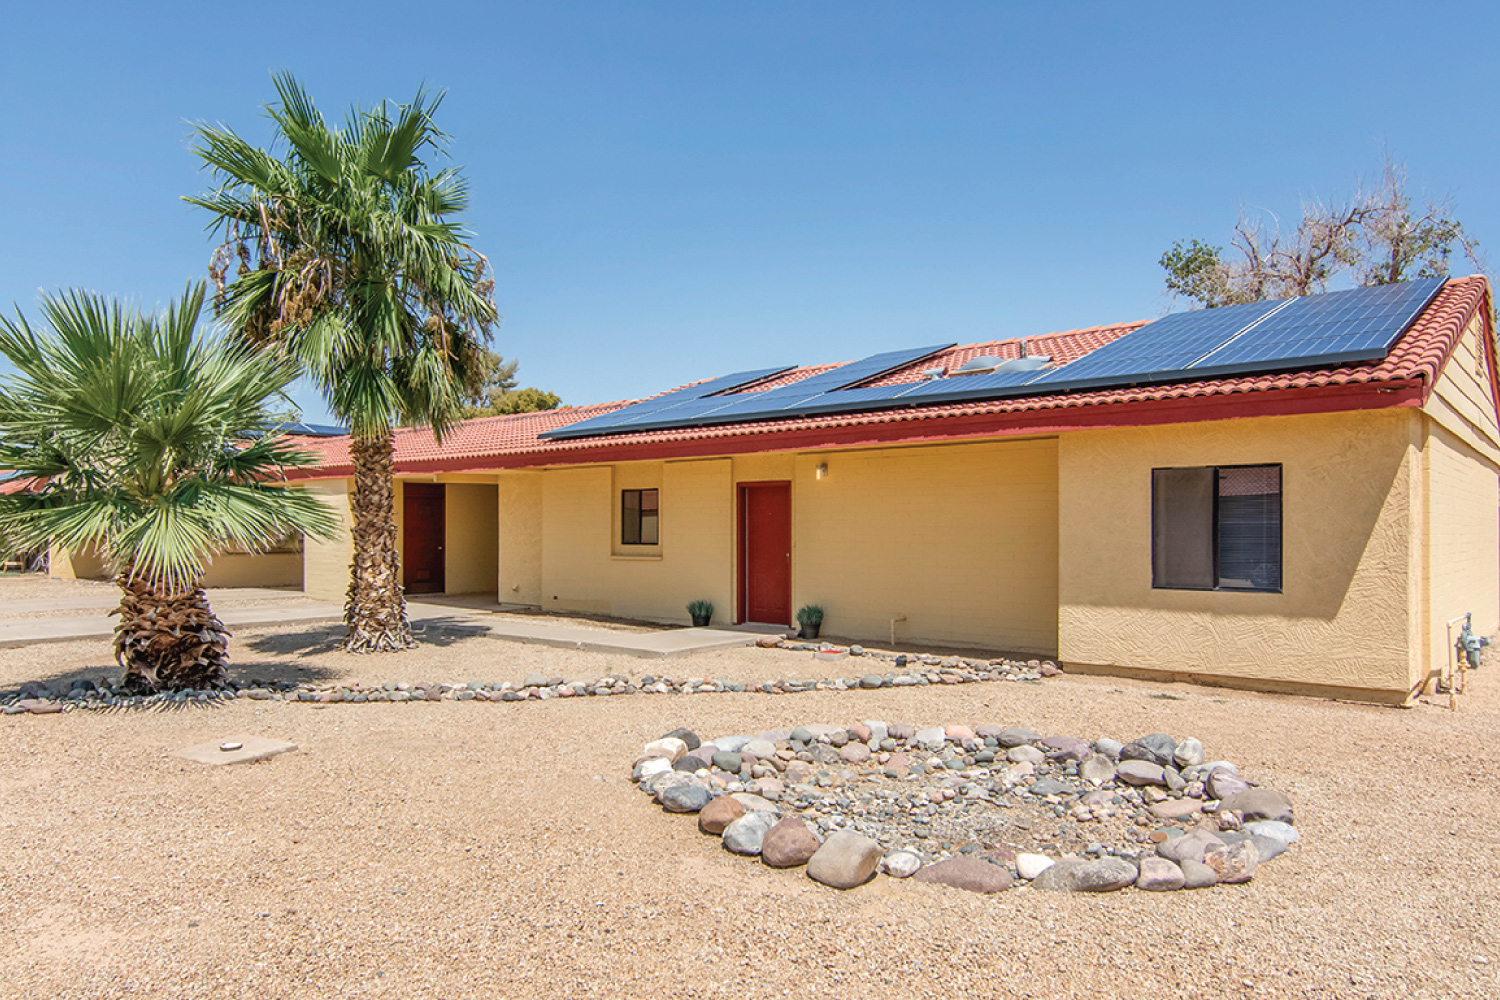 Balfour Beatty Communities rooftop solar program surpasses Department of Defense’s renewable energy goal in 2018